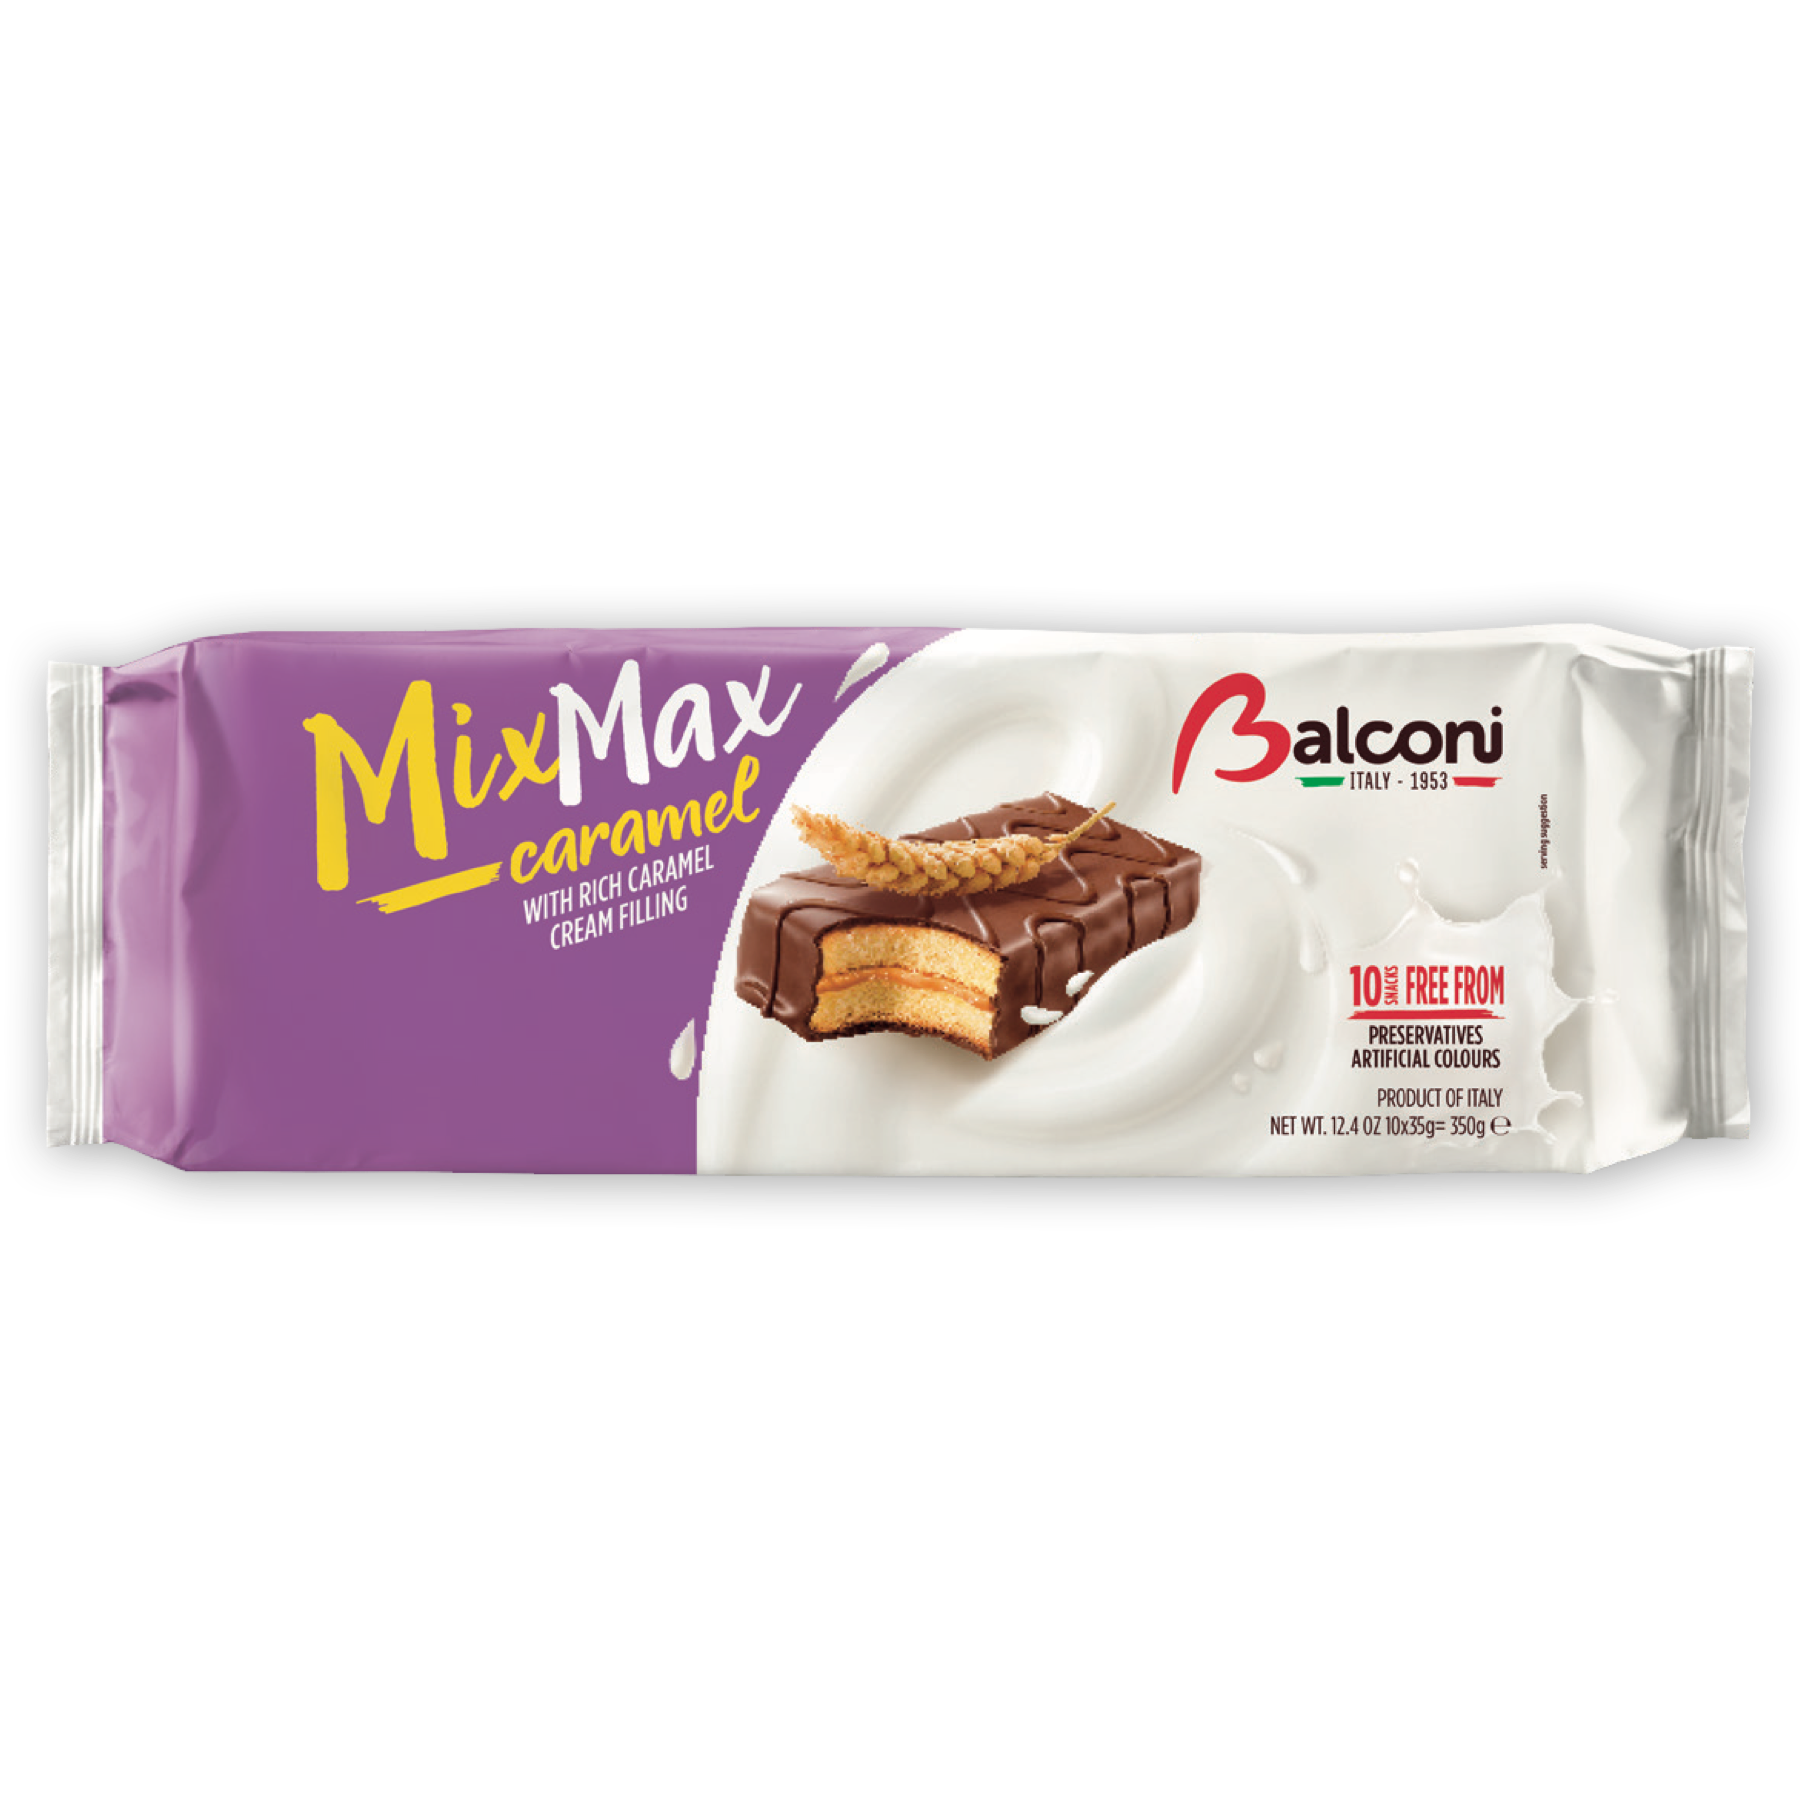 Balconi Mix Max Caramel, 12.4 oz (350g)